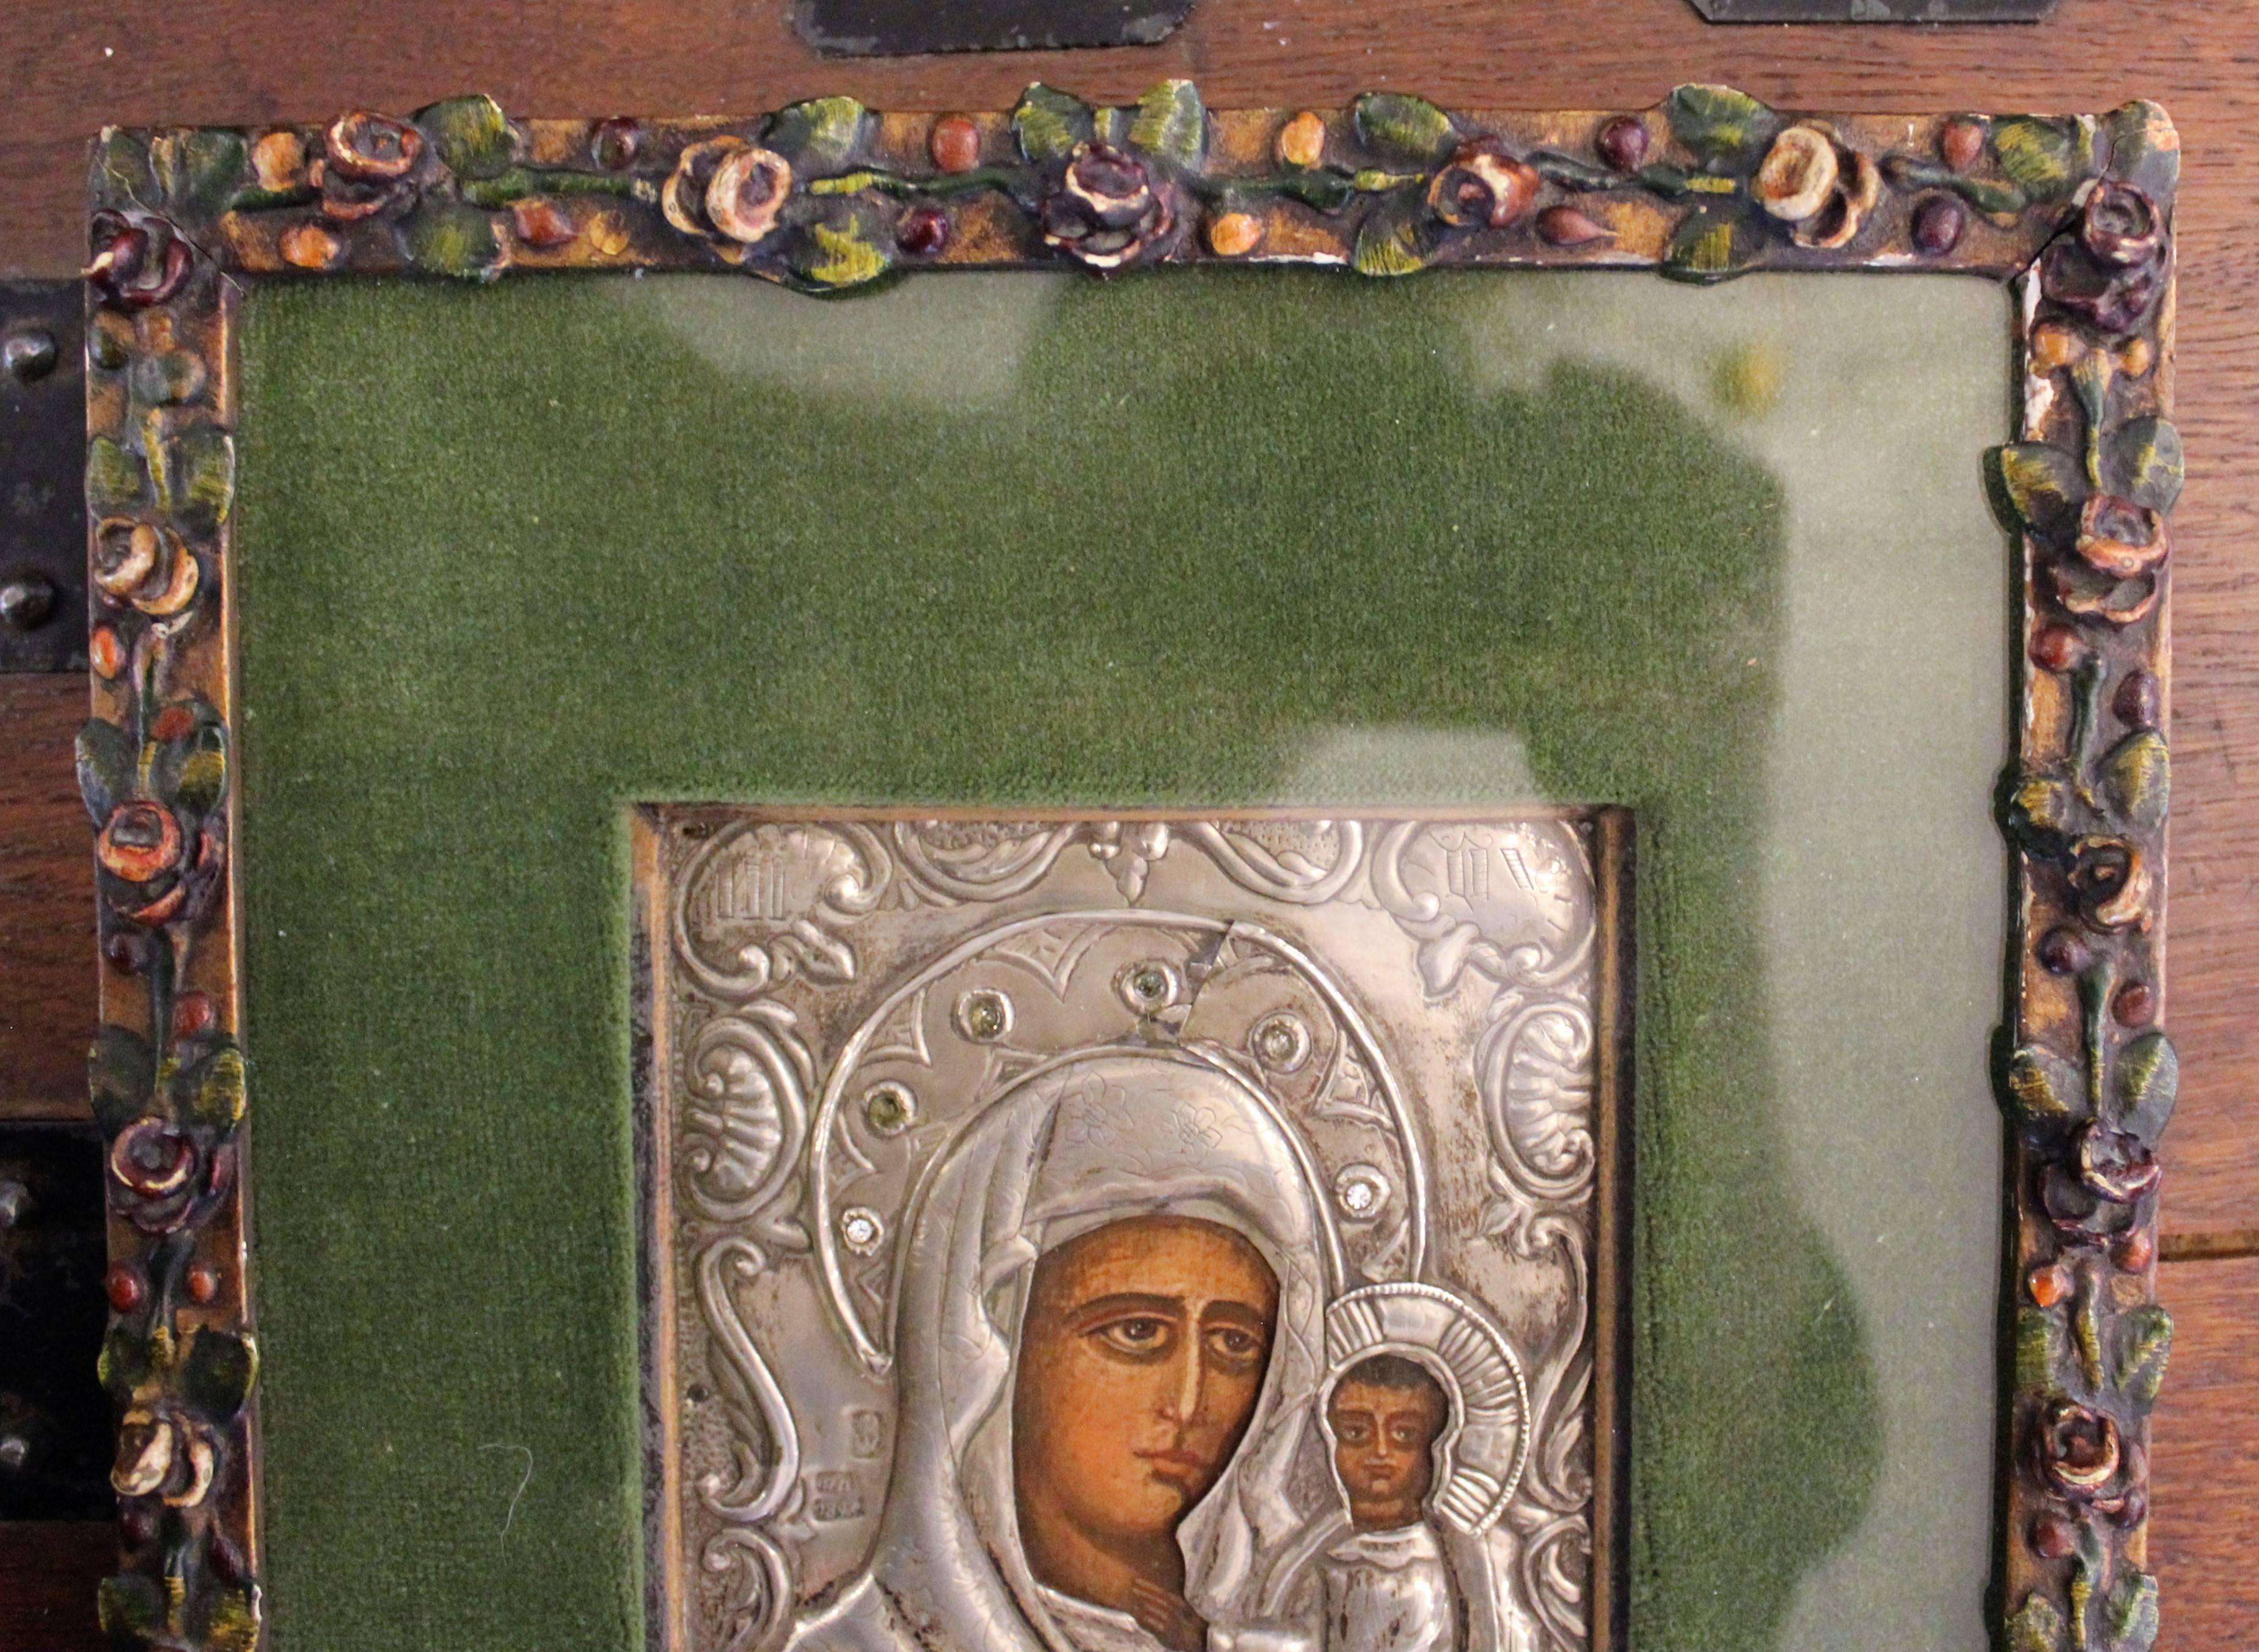 tableau russe du 19e siècle représentant la Vierge Marie et Jésus-Christ avec oklad finement détaillé, martelé à la main et poinçonné en argent, orné de pierres semi-précieuses.
Taille :
Sans cadre : 5.75